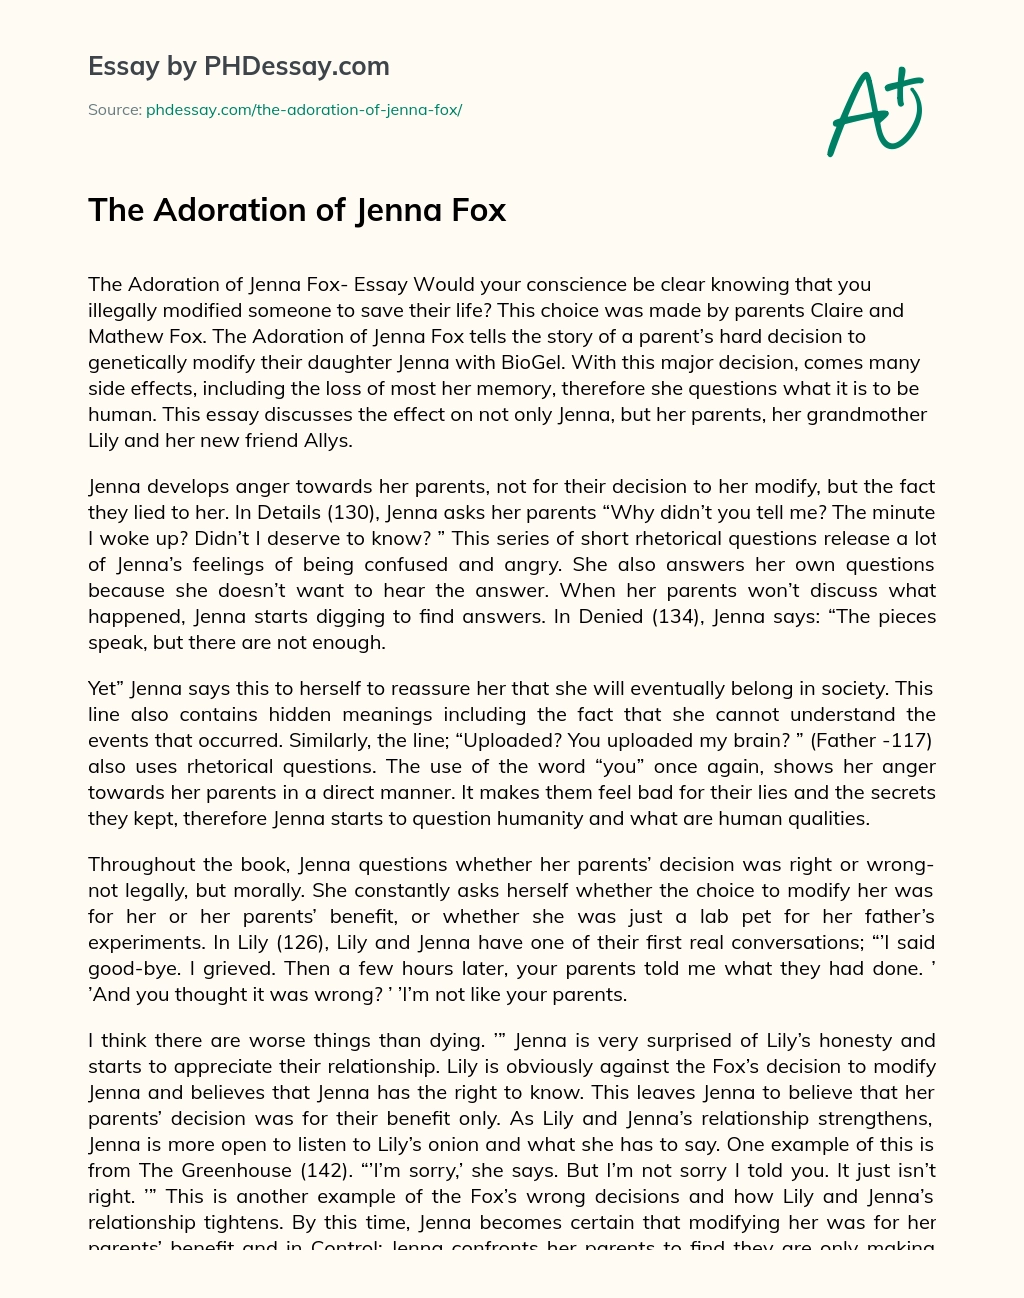 The Adoration of Jenna Fox essay